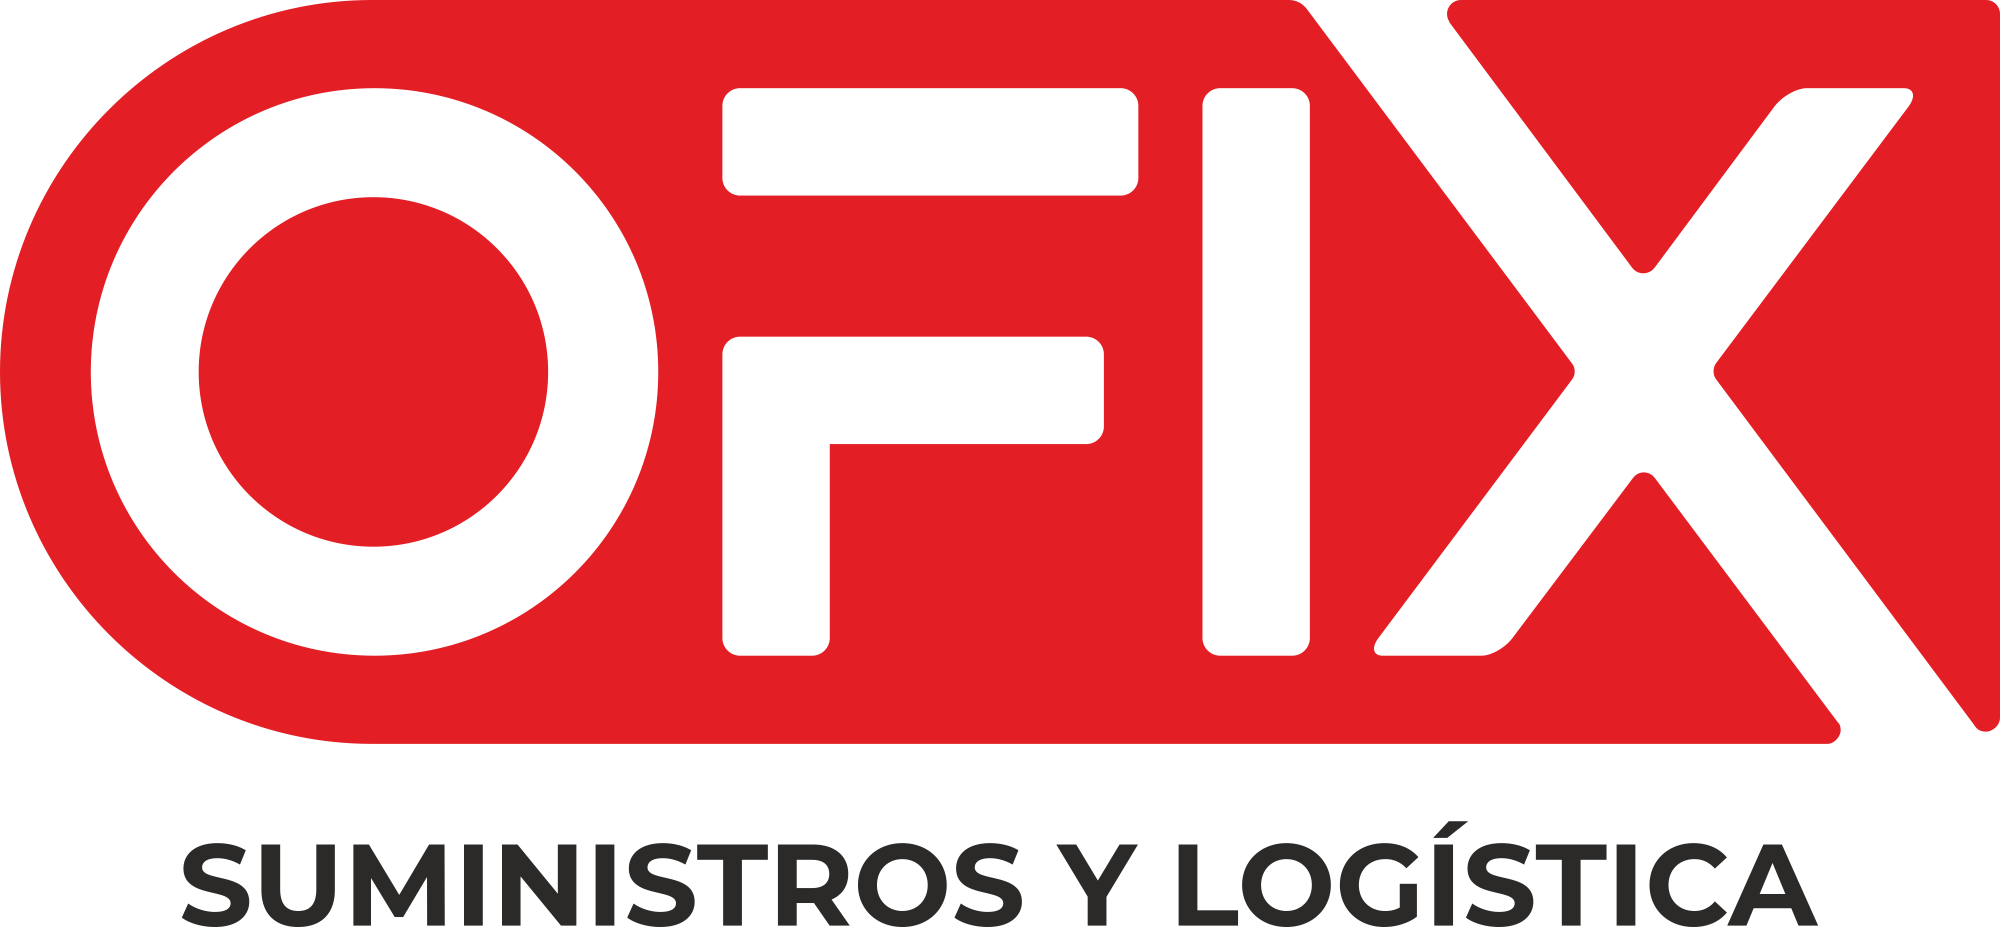 Logo OFIX Suministros y logística S.A.S.